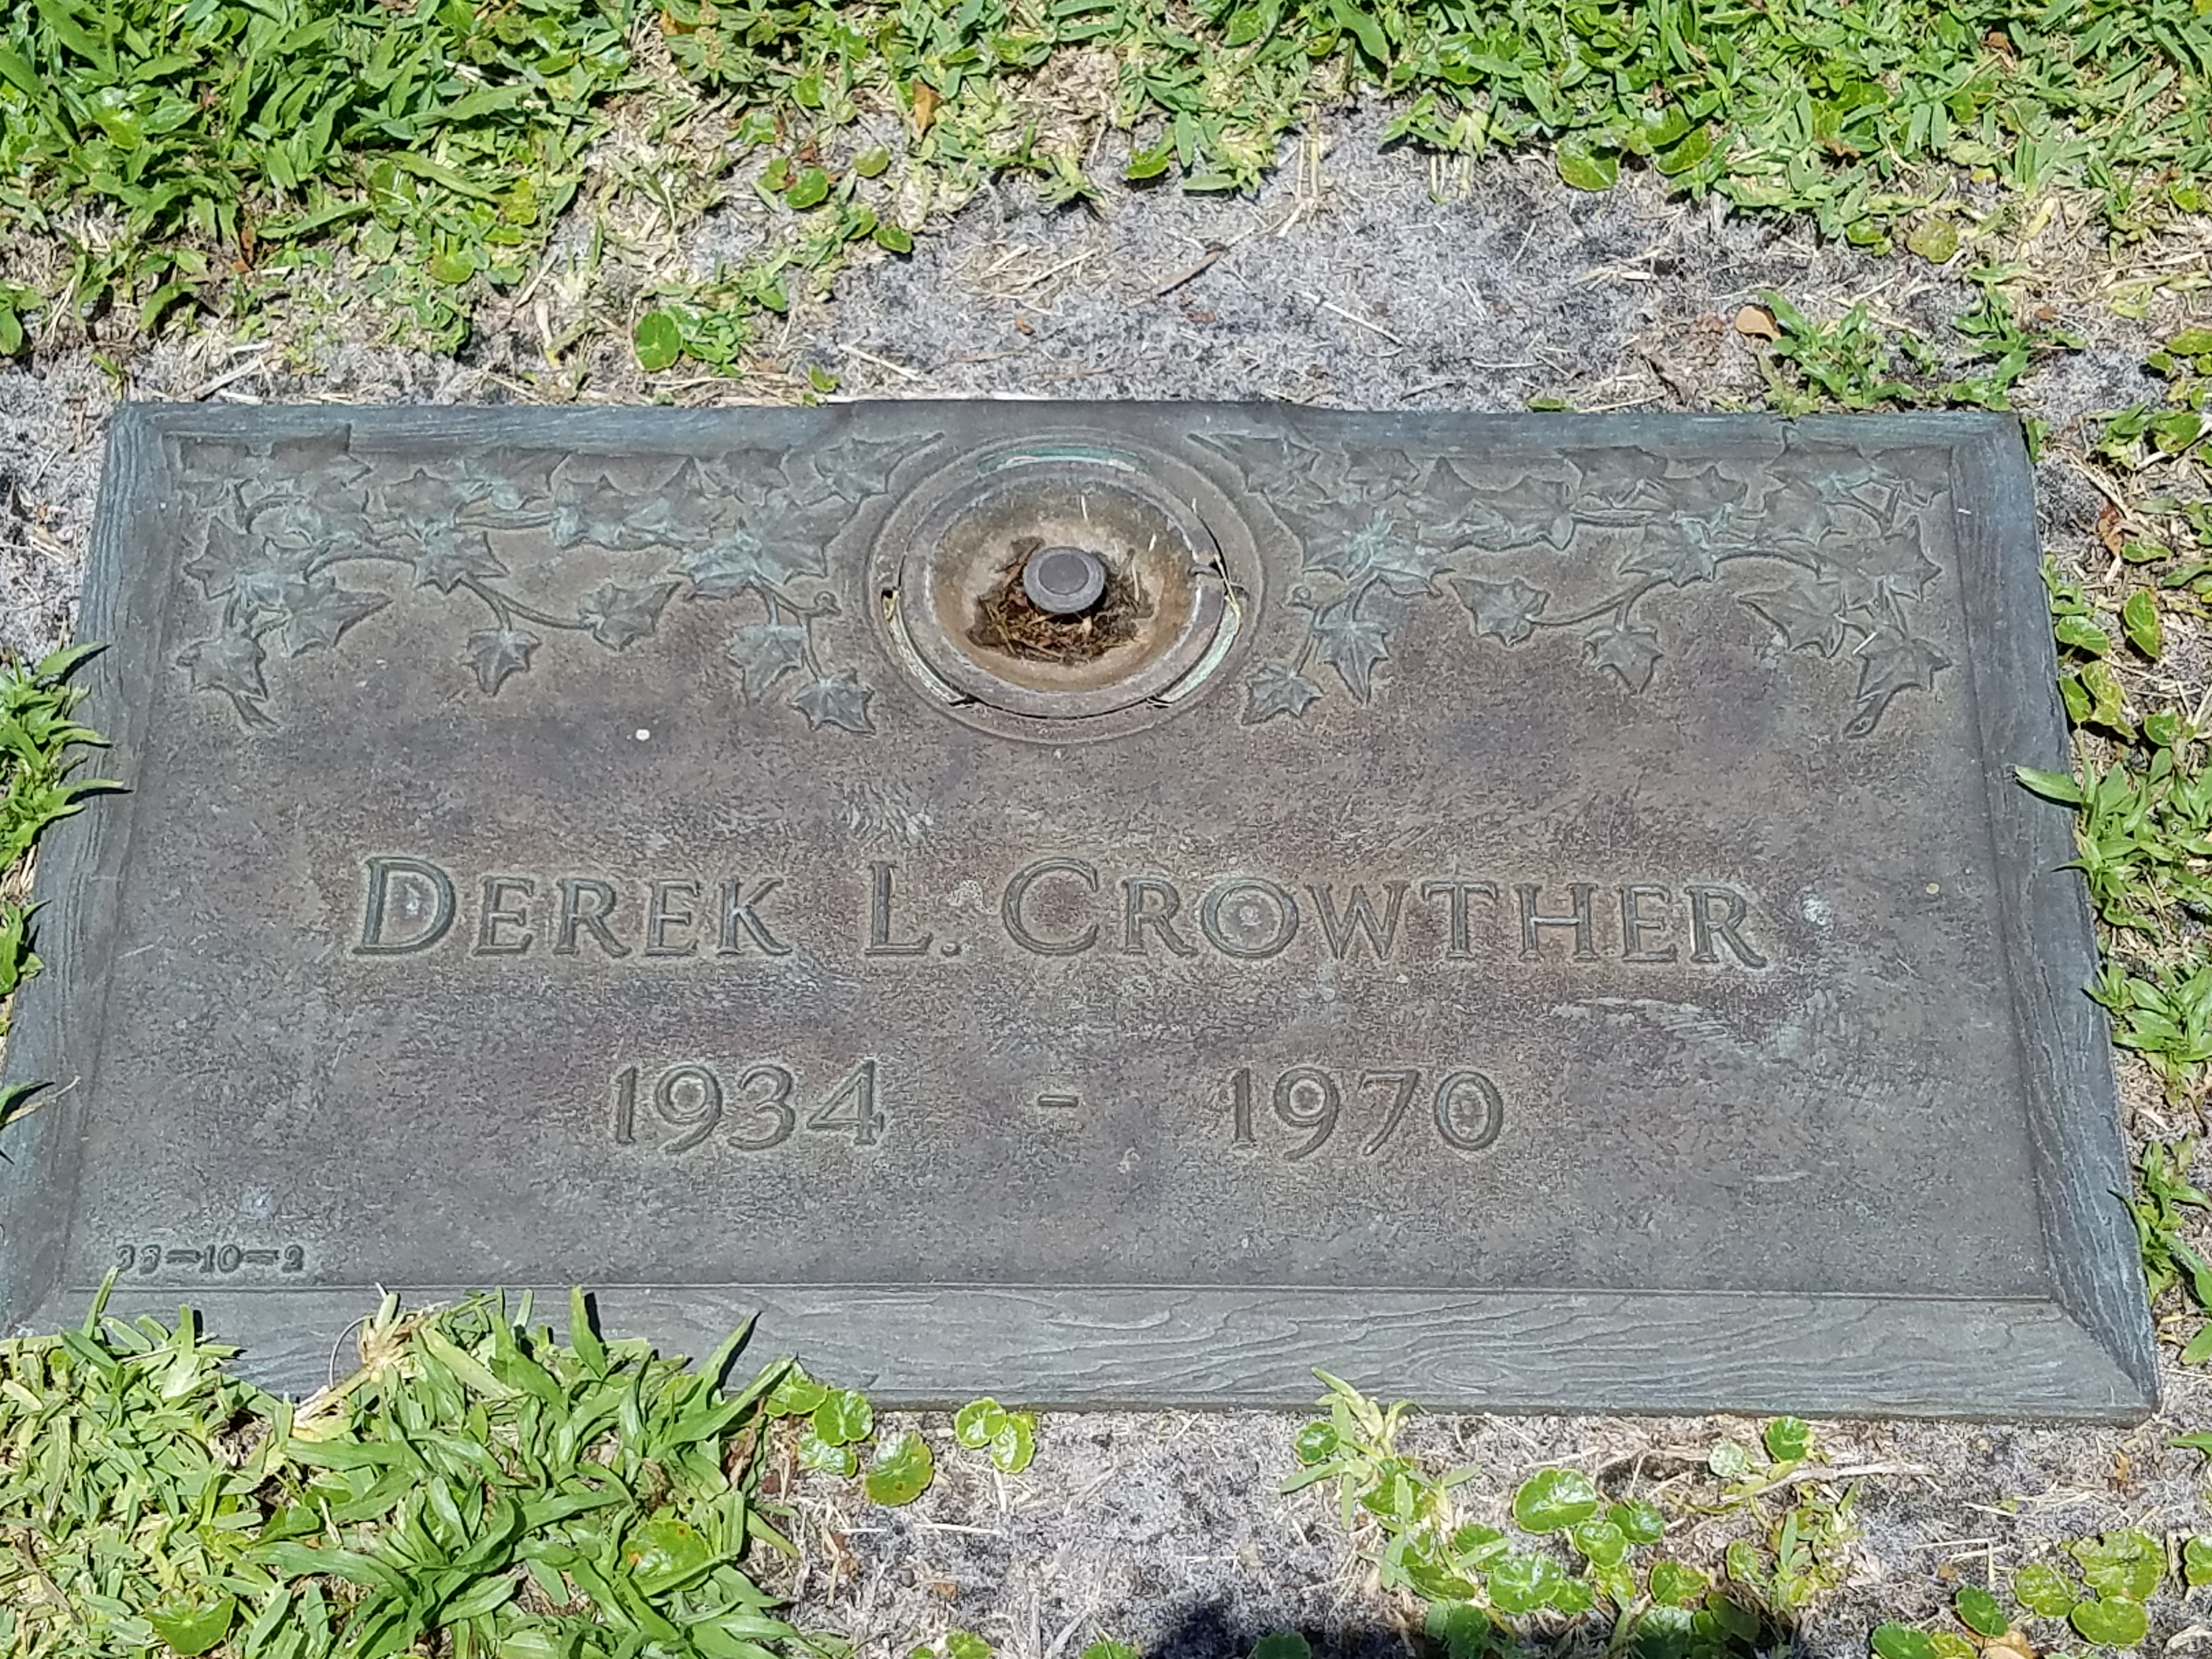 Derek L Crowther